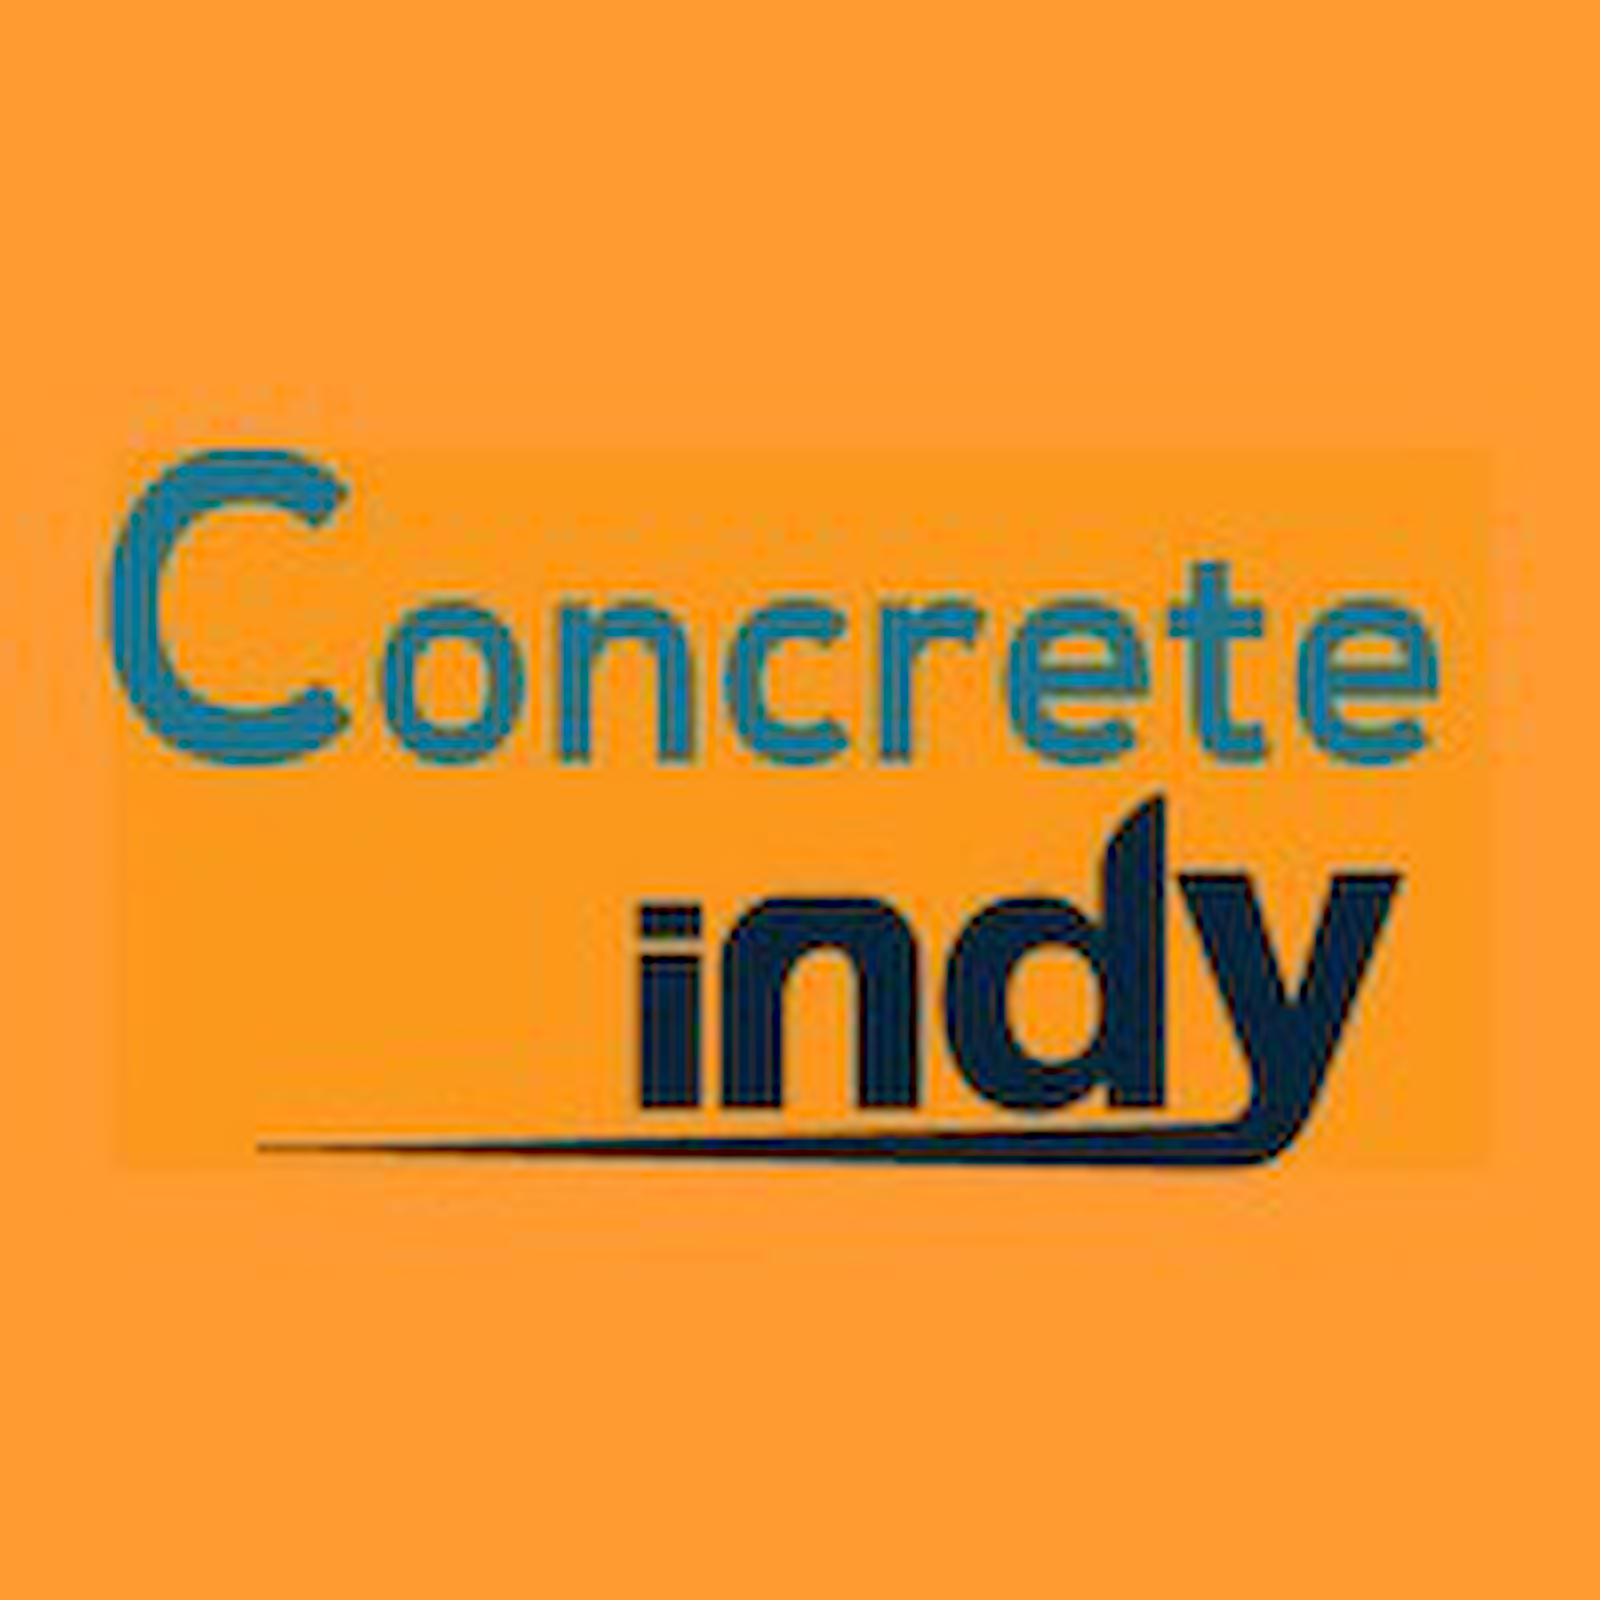 Concrete Indy